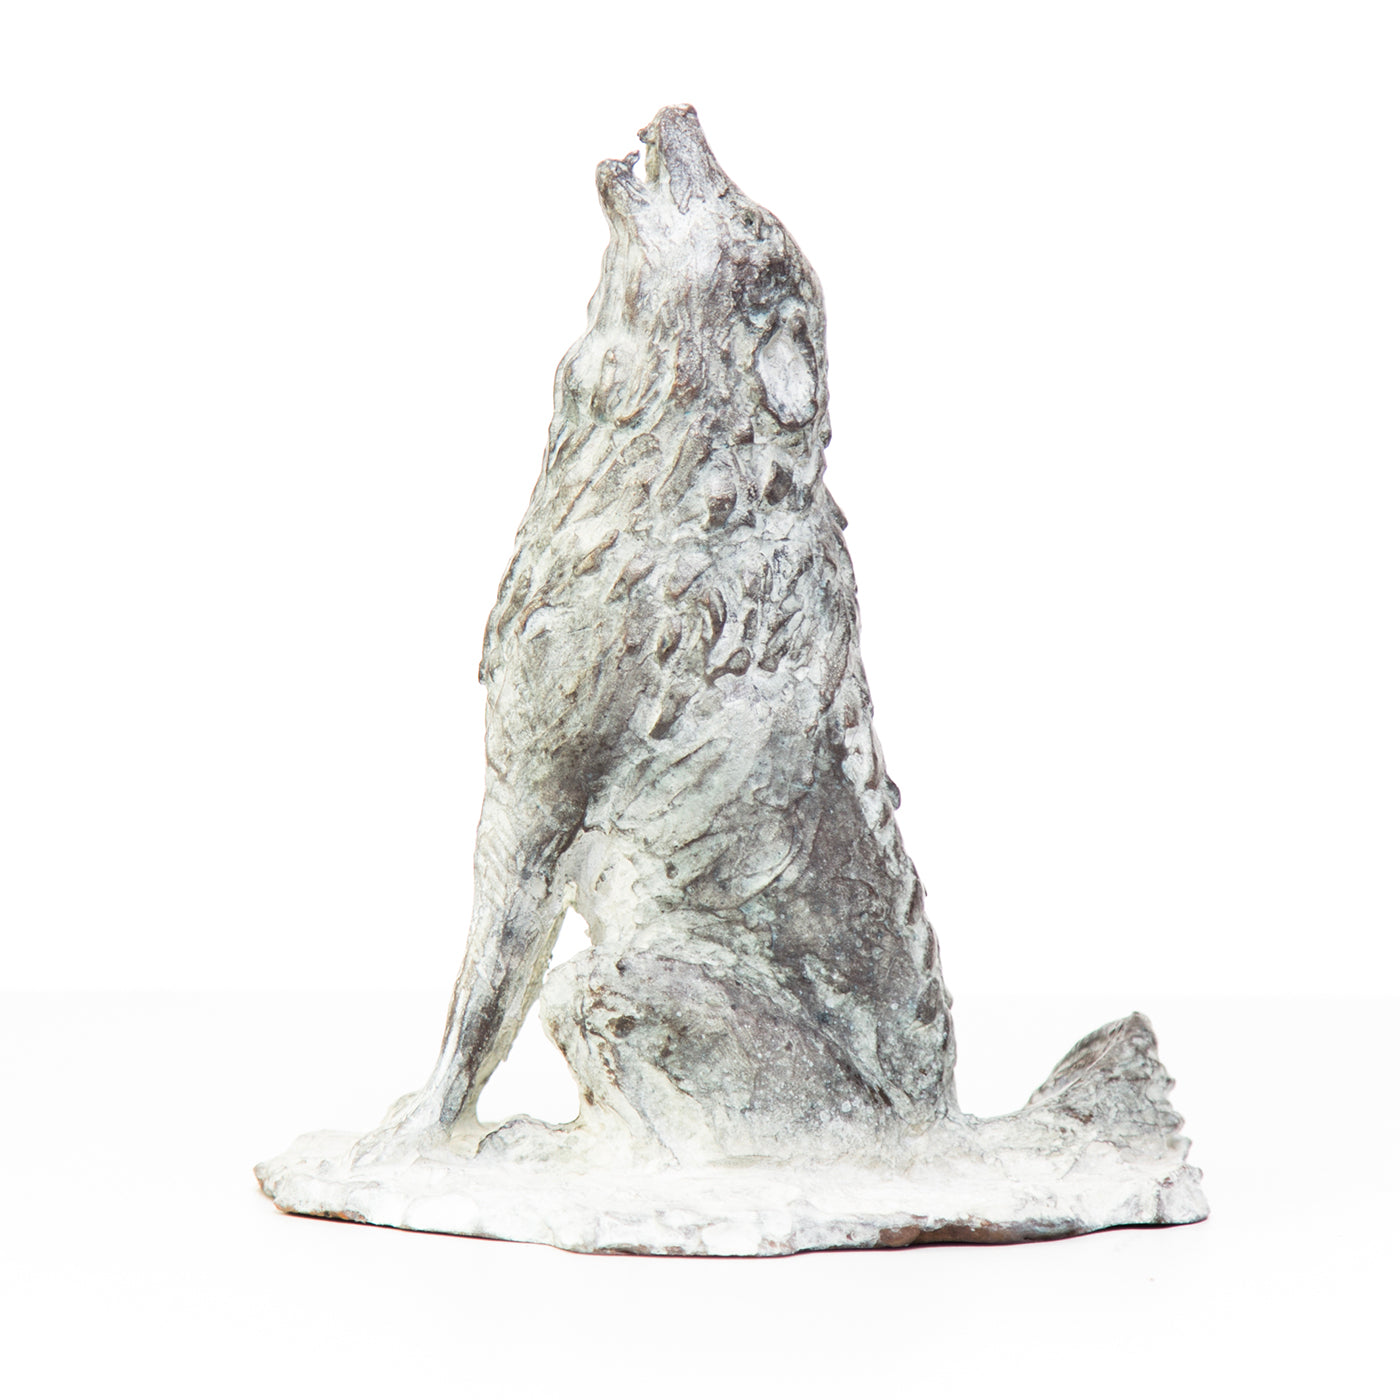 Howling Wolf Sculpture - Alternative view 2